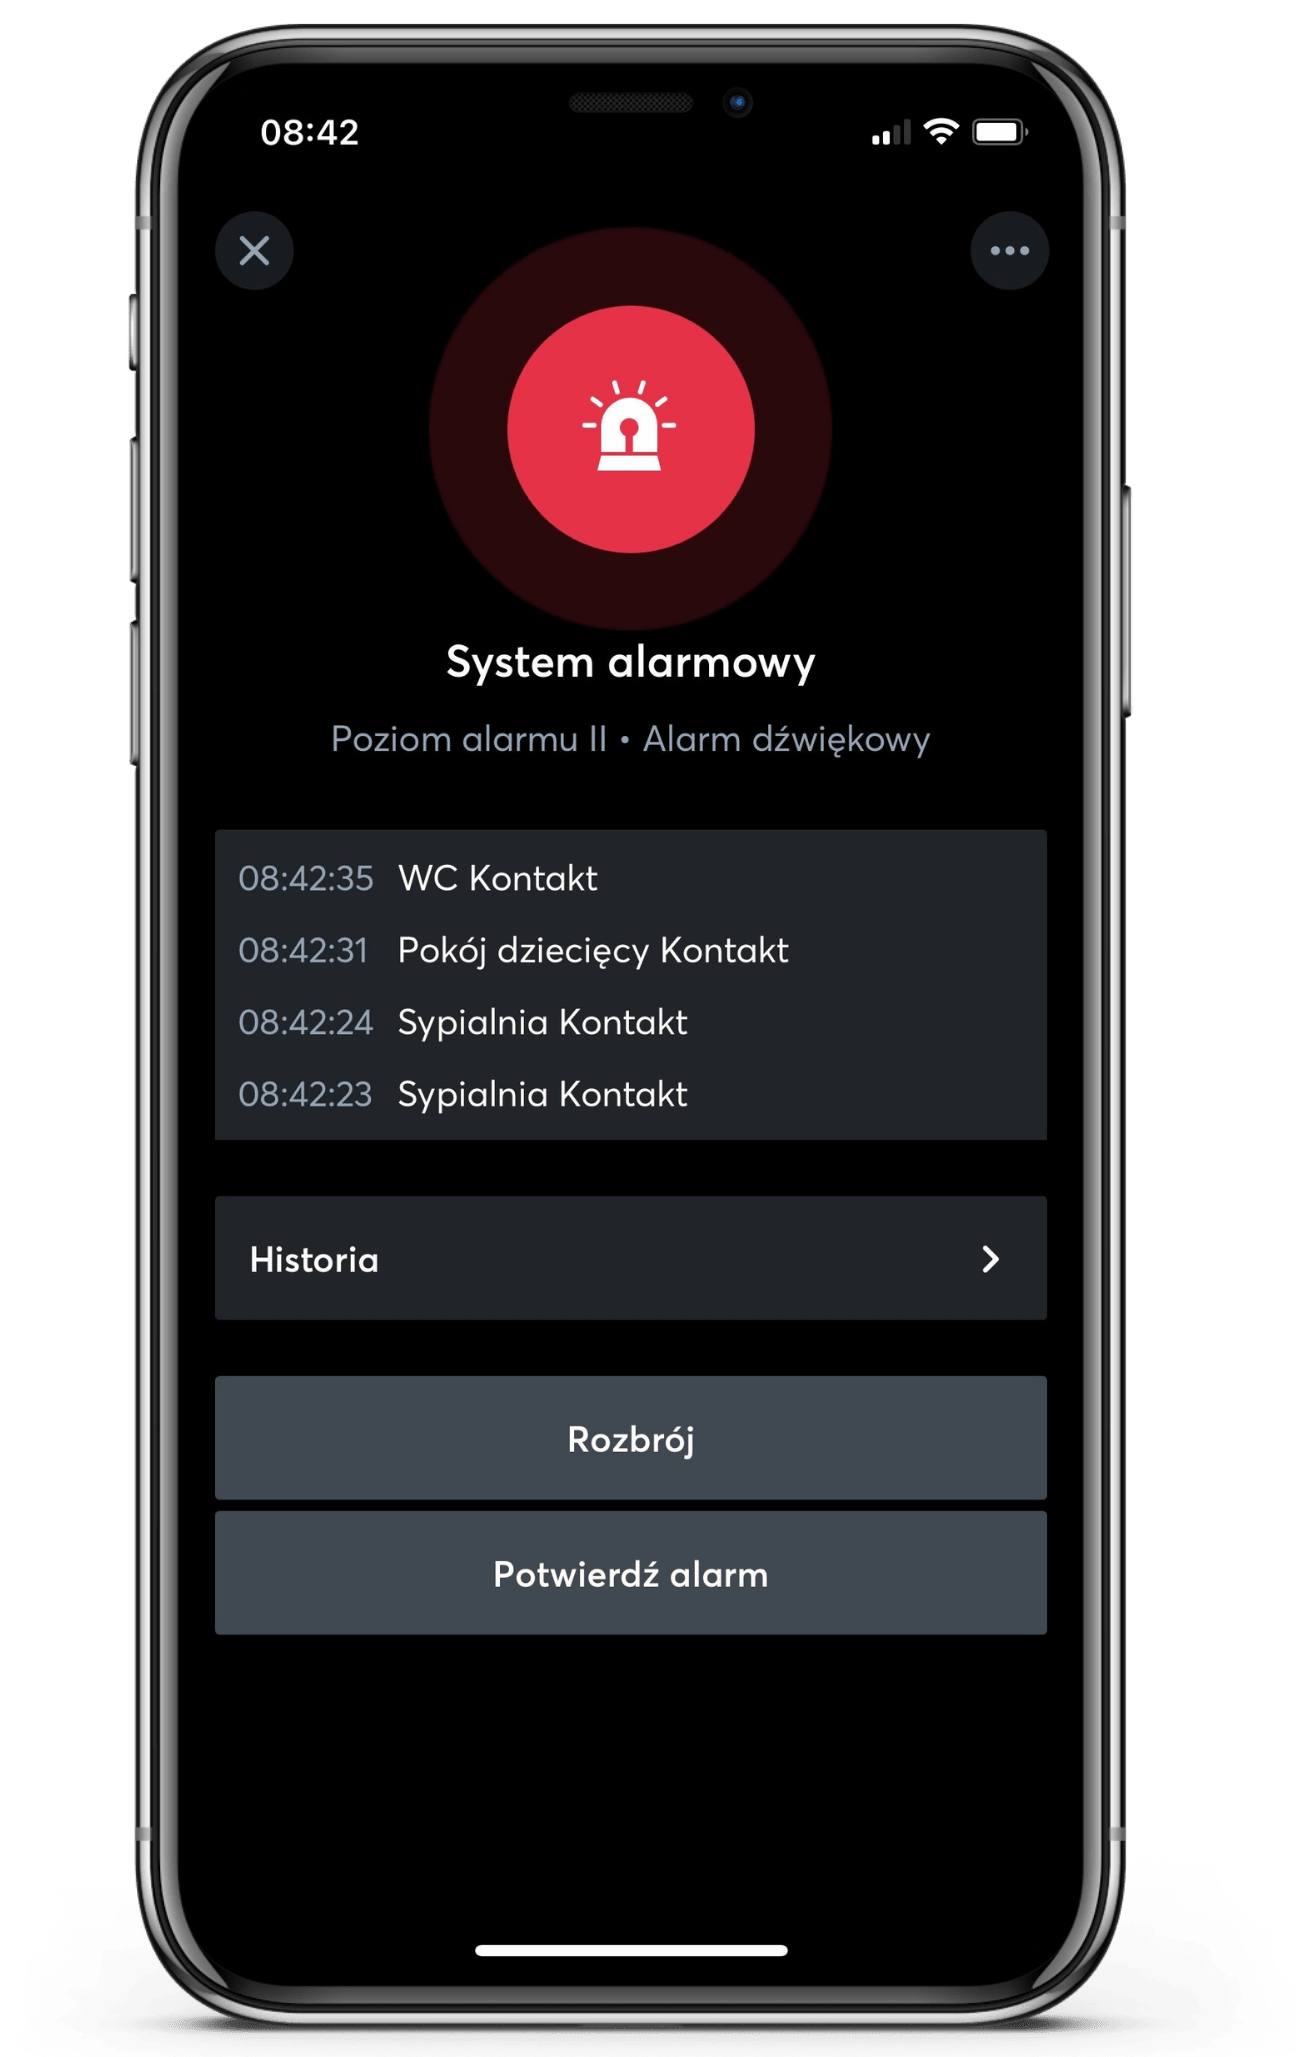 System alarmowy w aplikacji Loxone